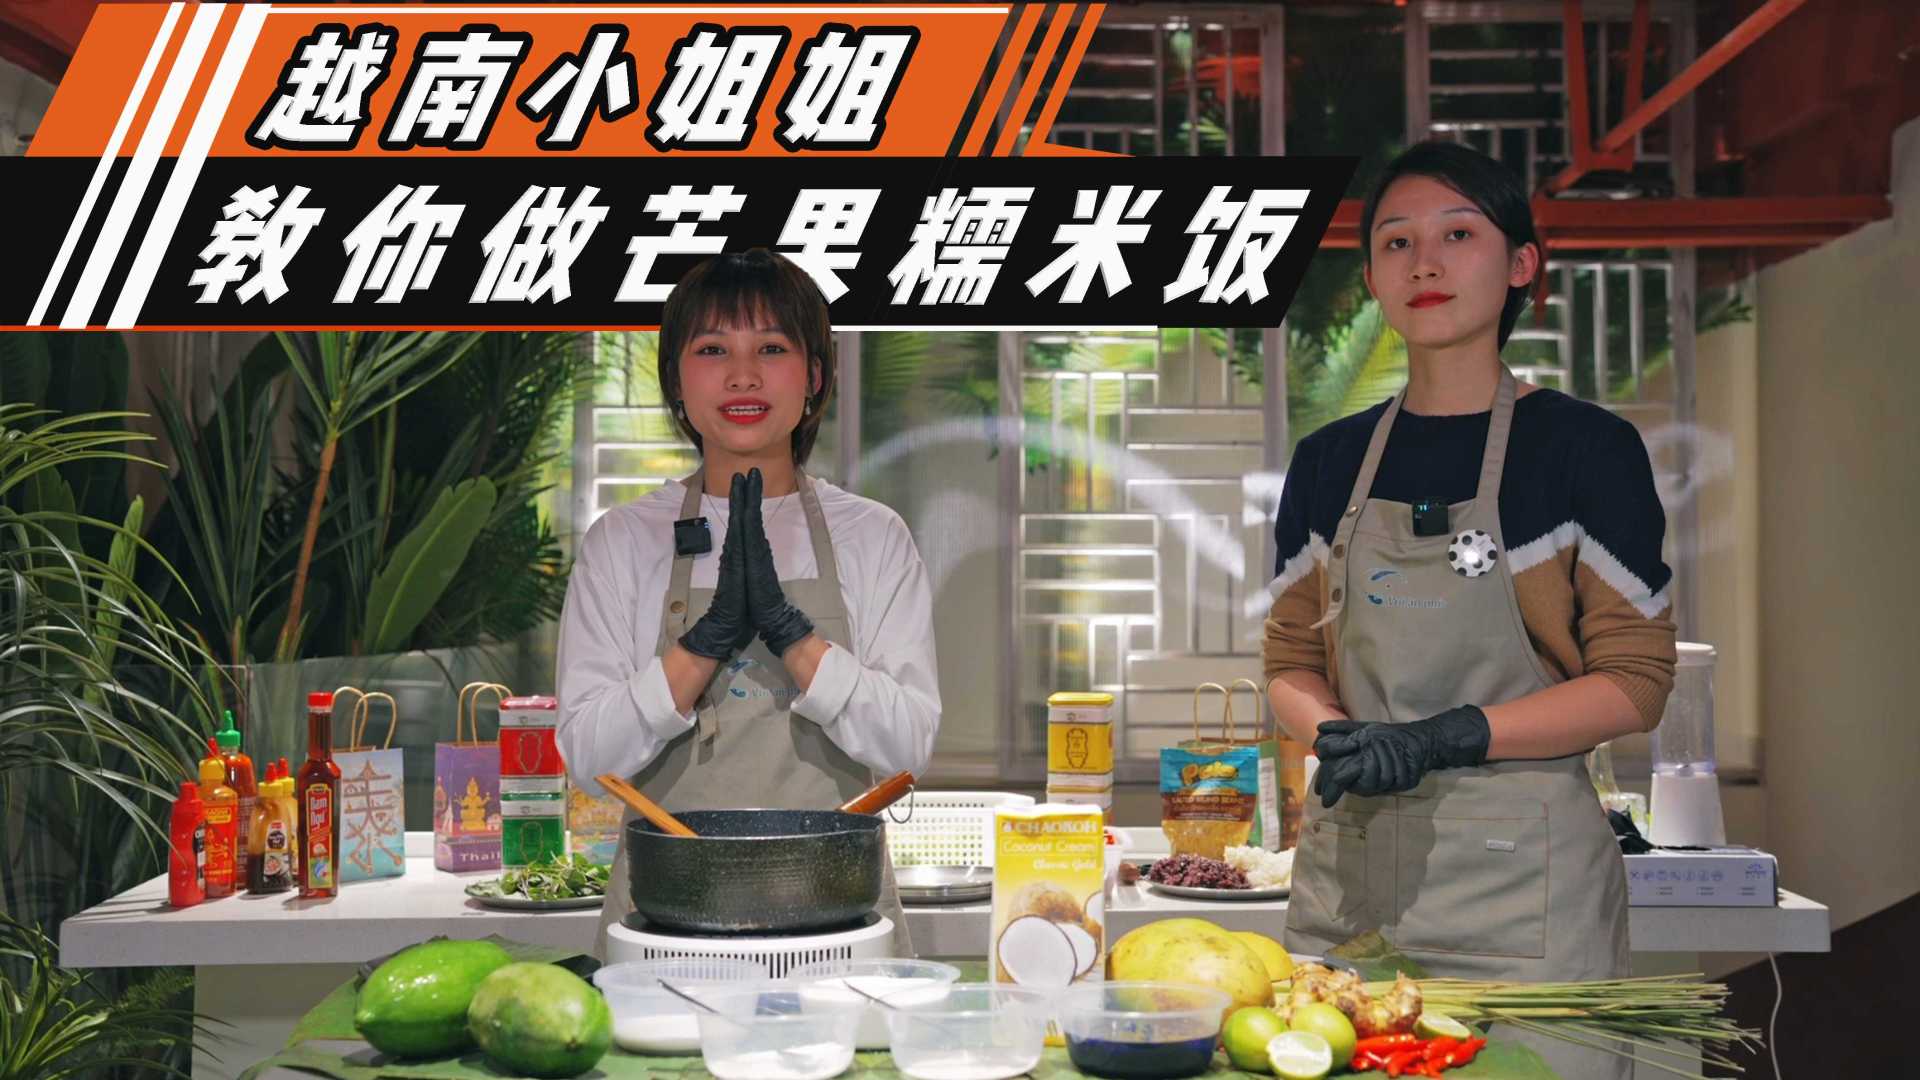 【美食探店】越南美食芒果糯米饭现场制作